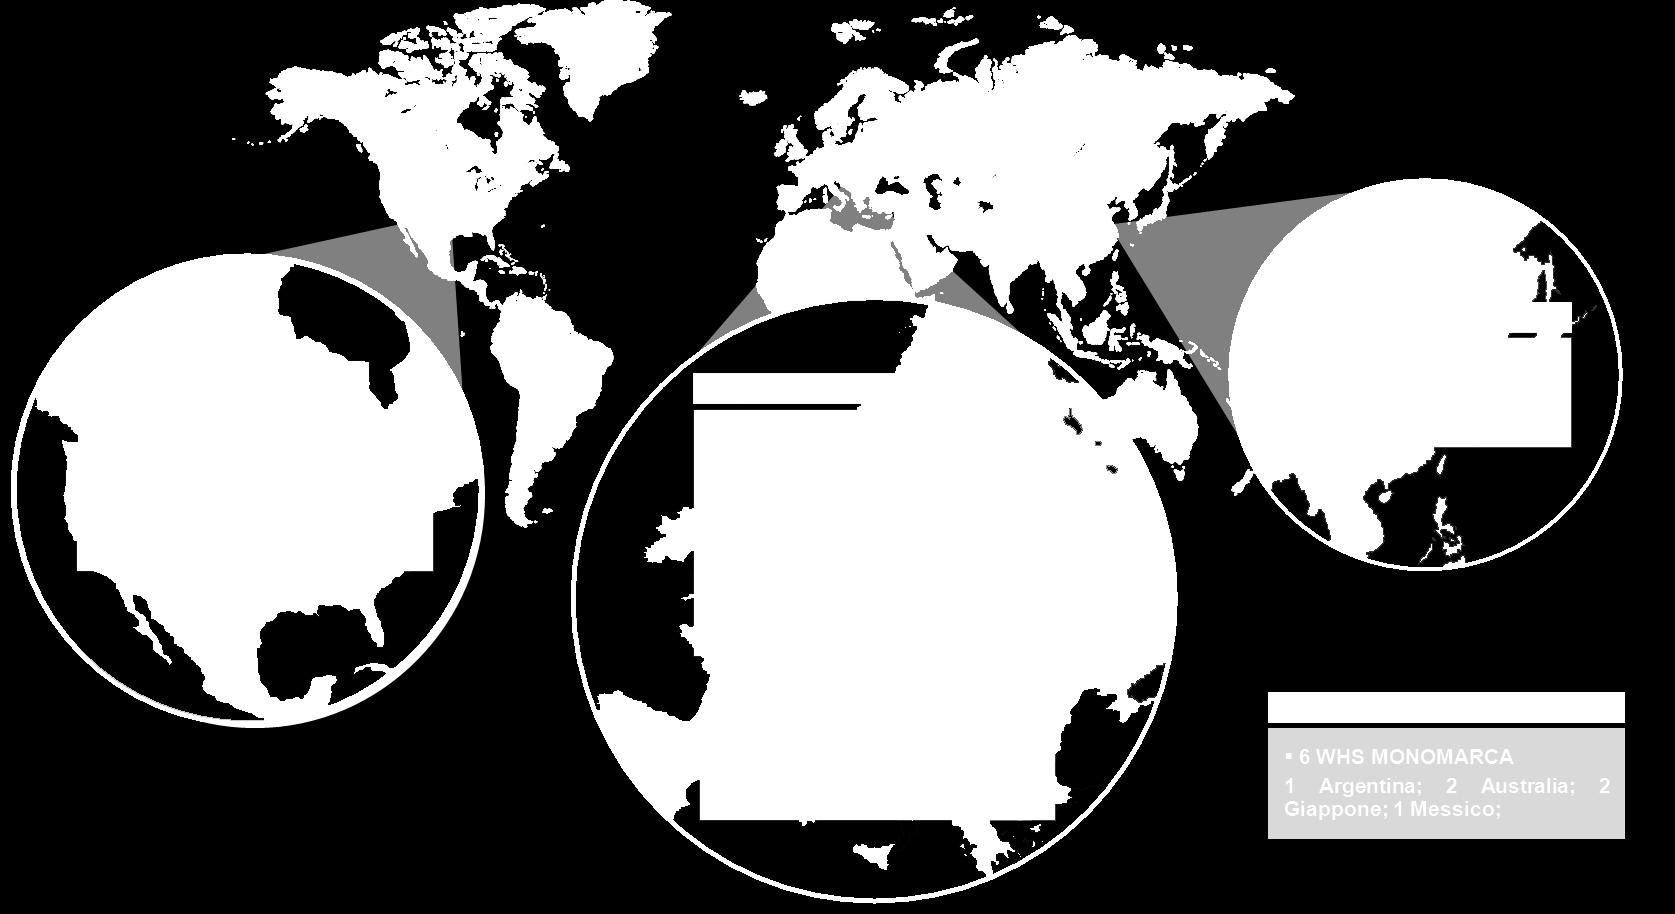 Nella rappresentazione grafica che segue vengono indicati i punti vendita DOS e Wholesale Monomarca al 31 marzo 2013 e la loro localizzazione geografica: Greater China Nord America 13 DOS 1 WHS